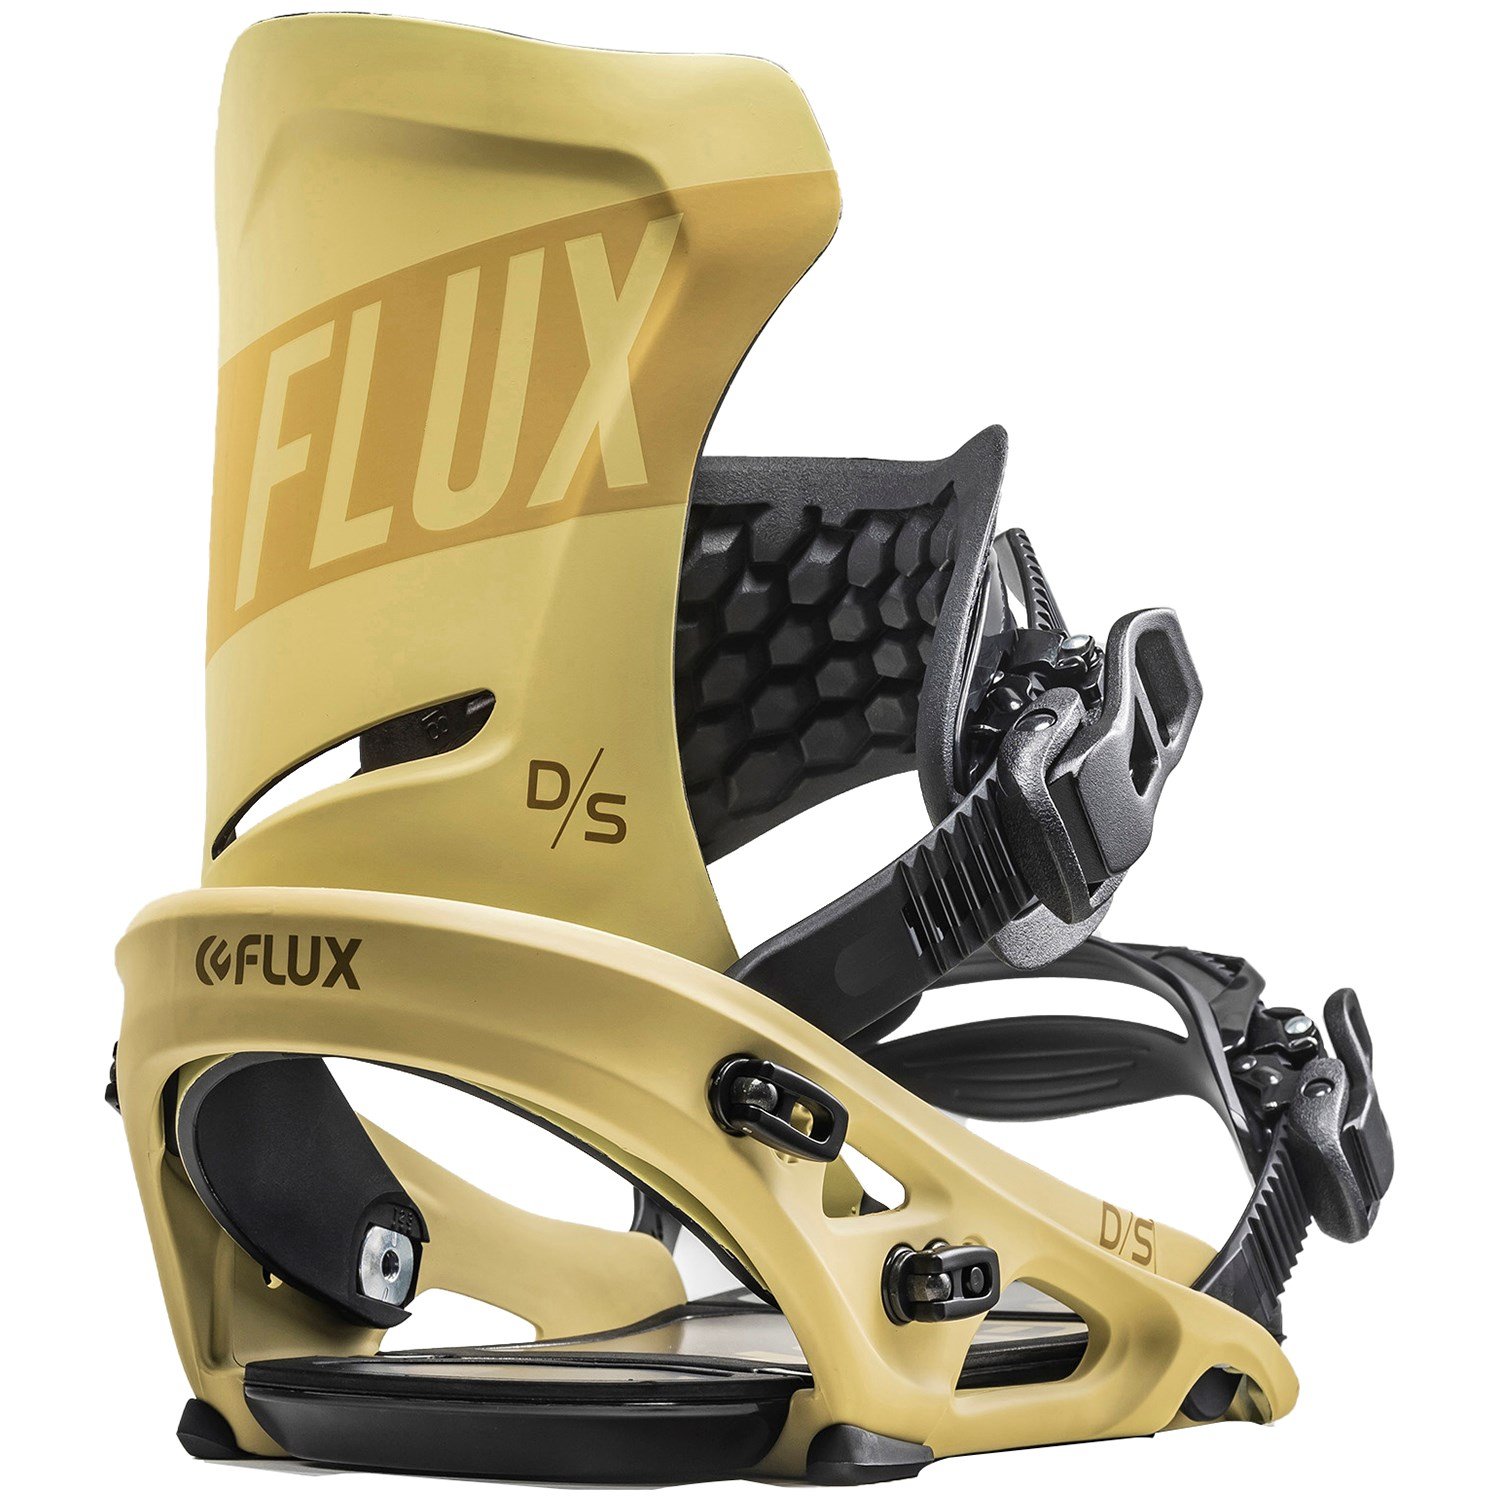 Flux DS Snowboard Bindings 2020